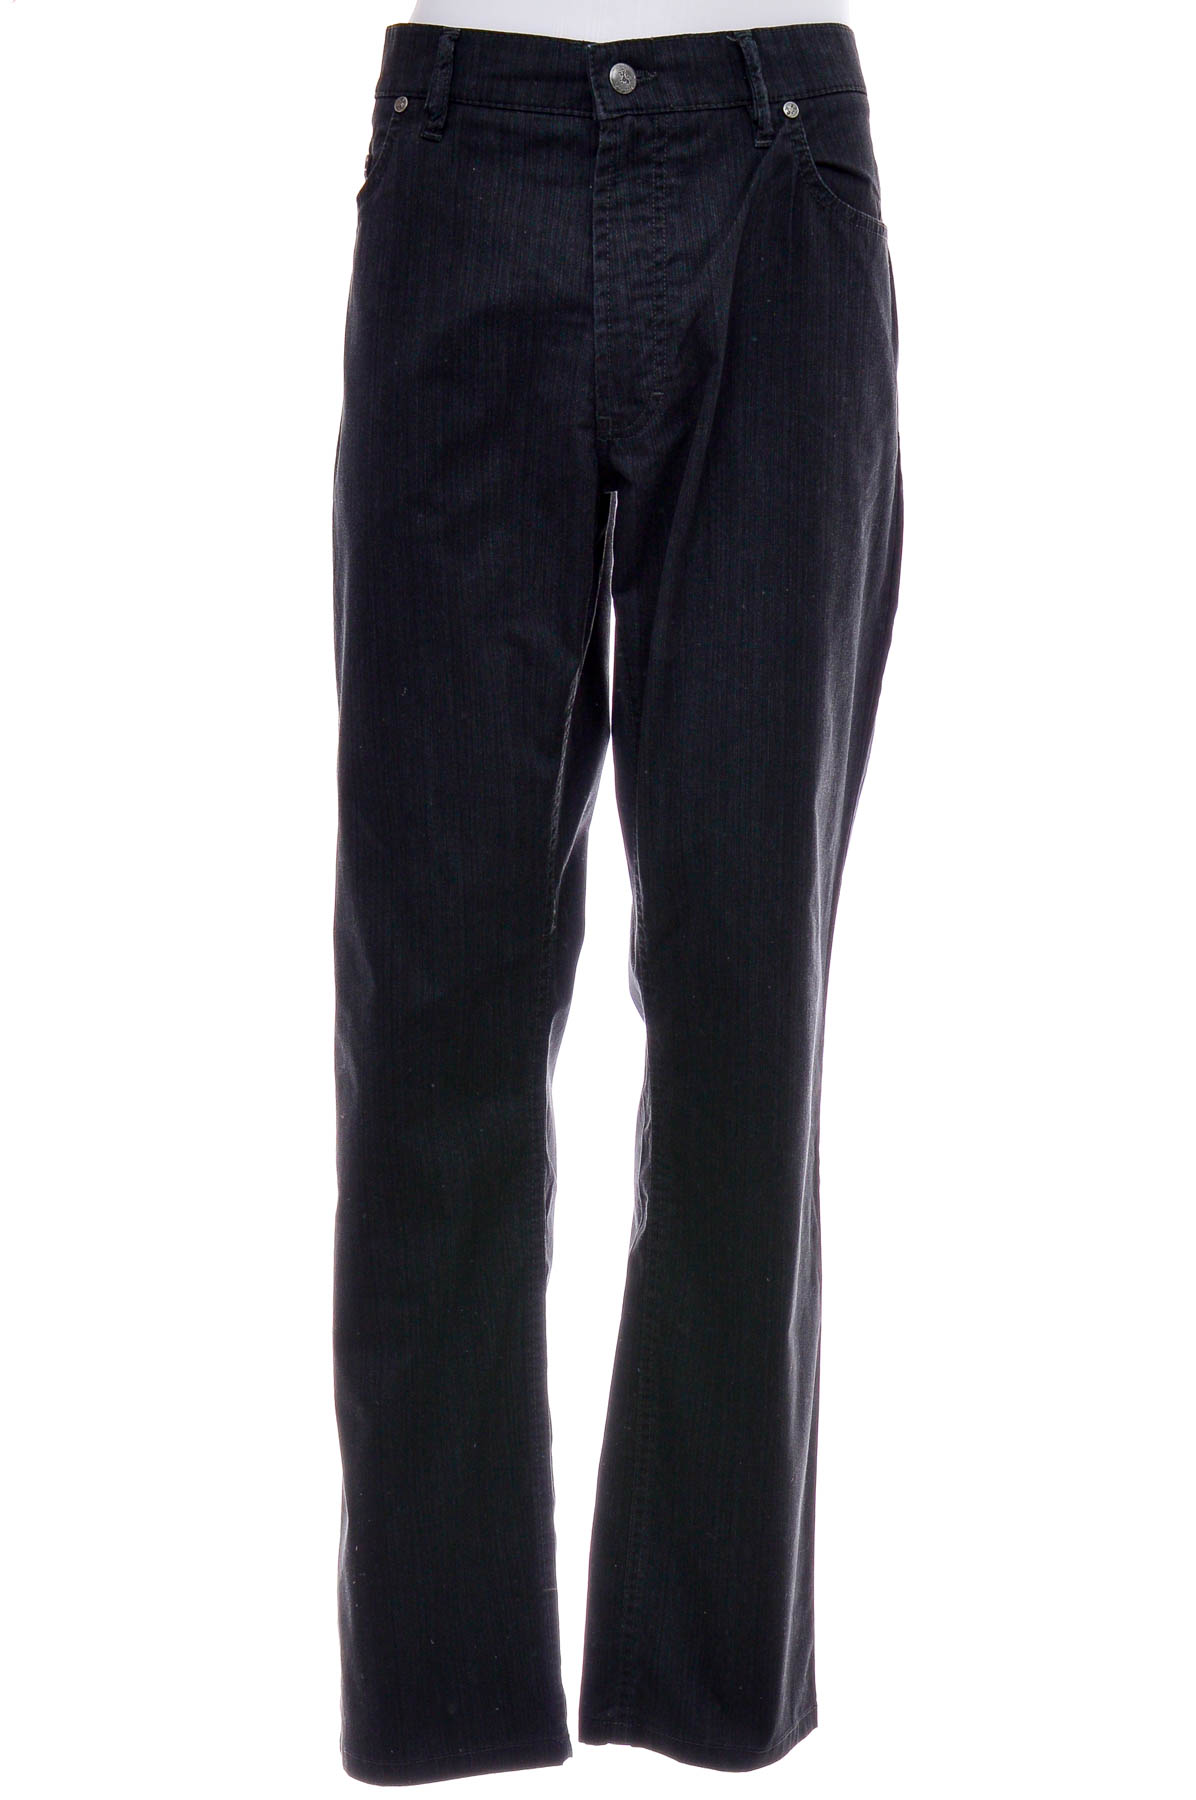 Pantalon pentru bărbați - Garnaby's - 0